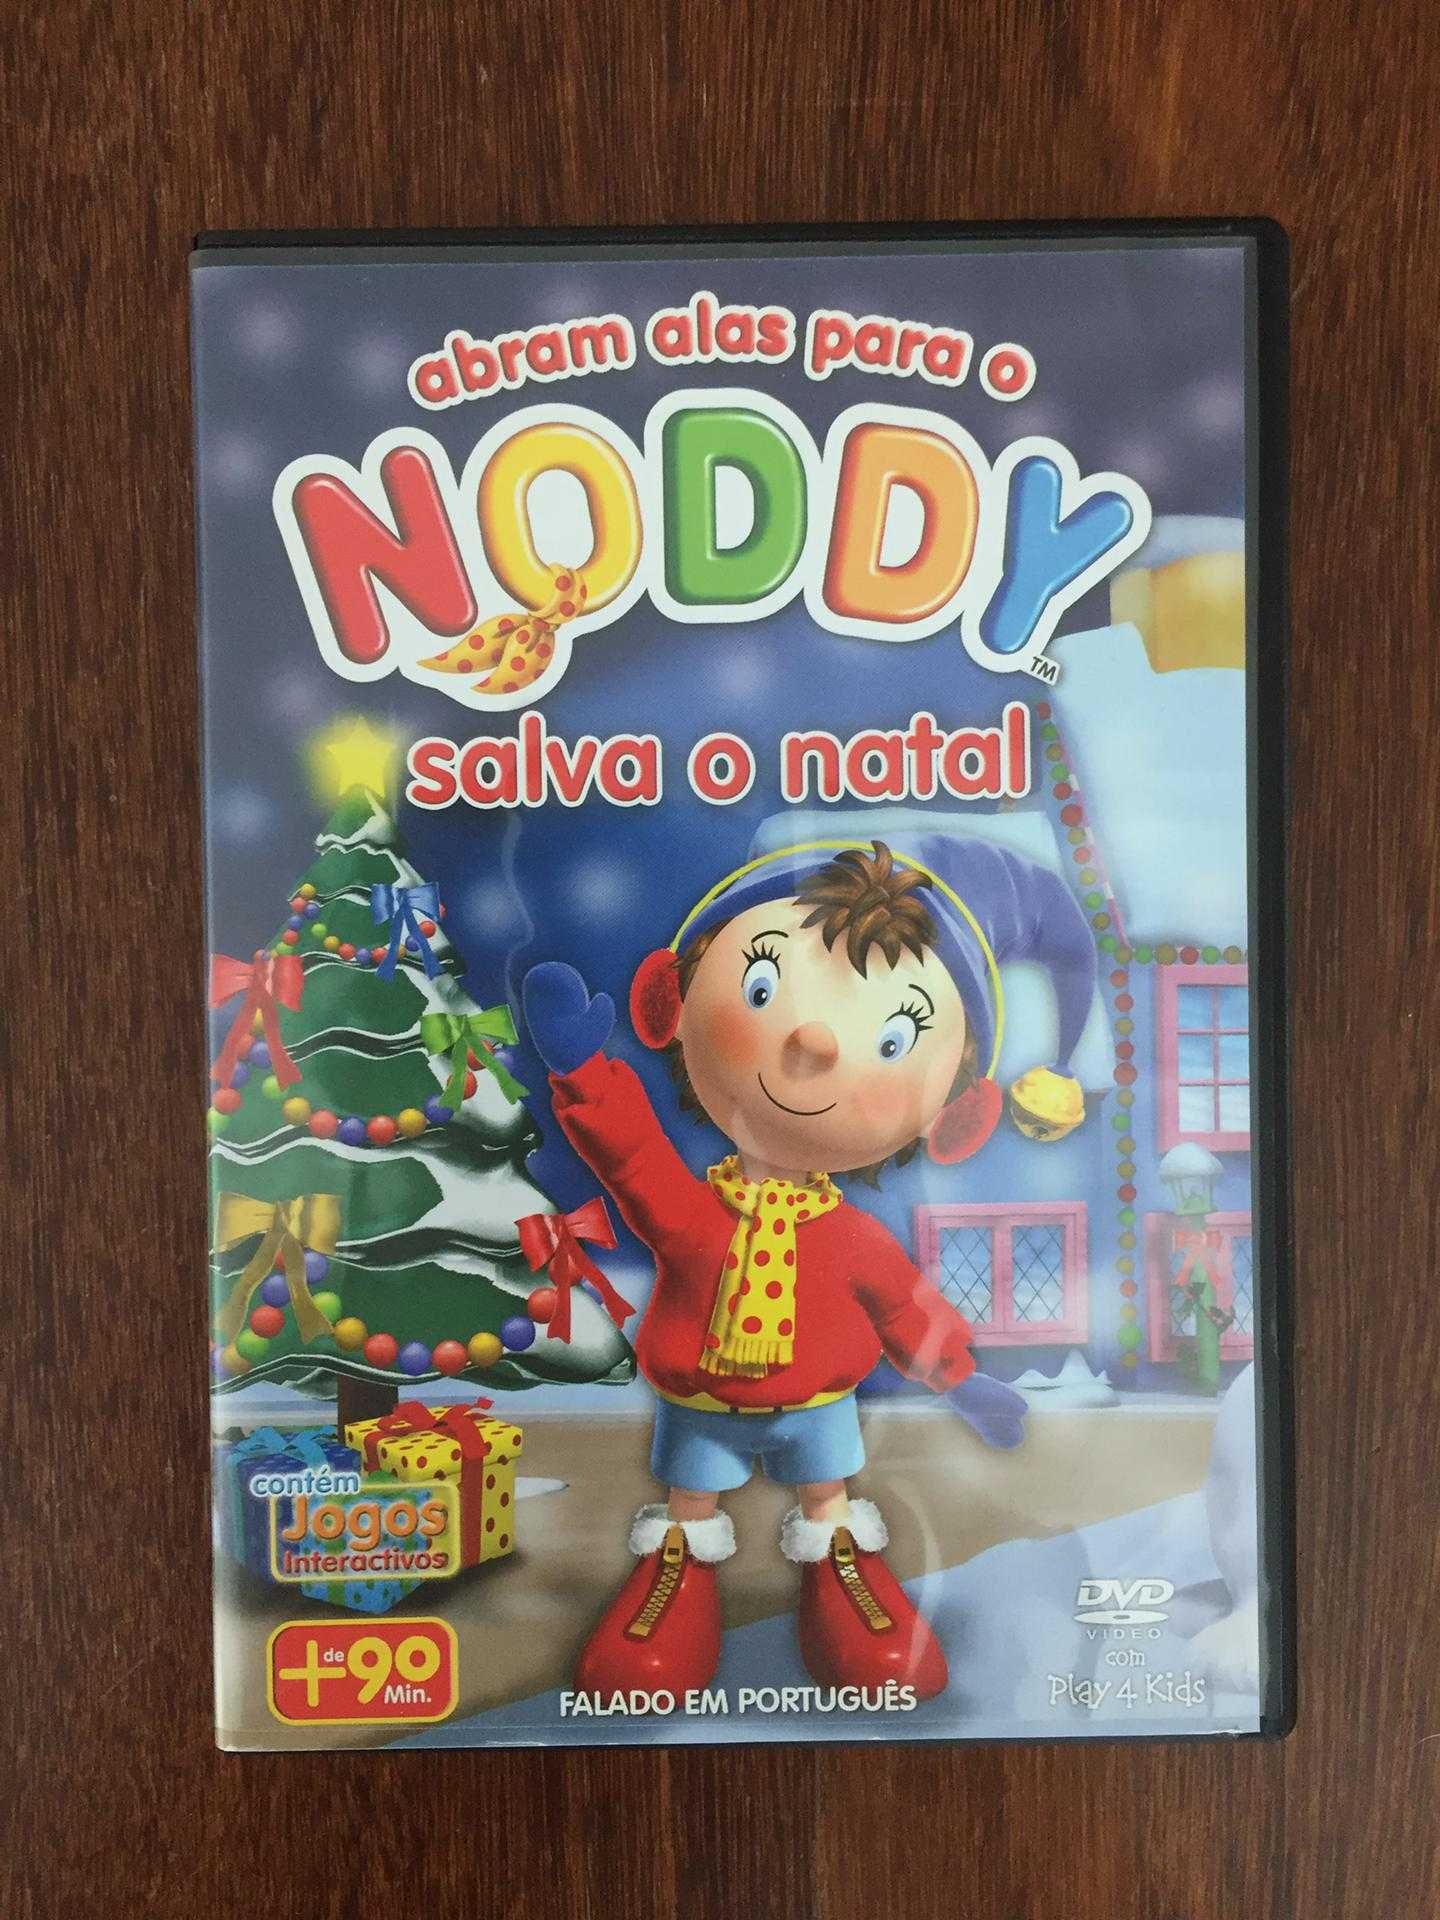 Coleção completa DVD Noddy + DVD Especial de Natal